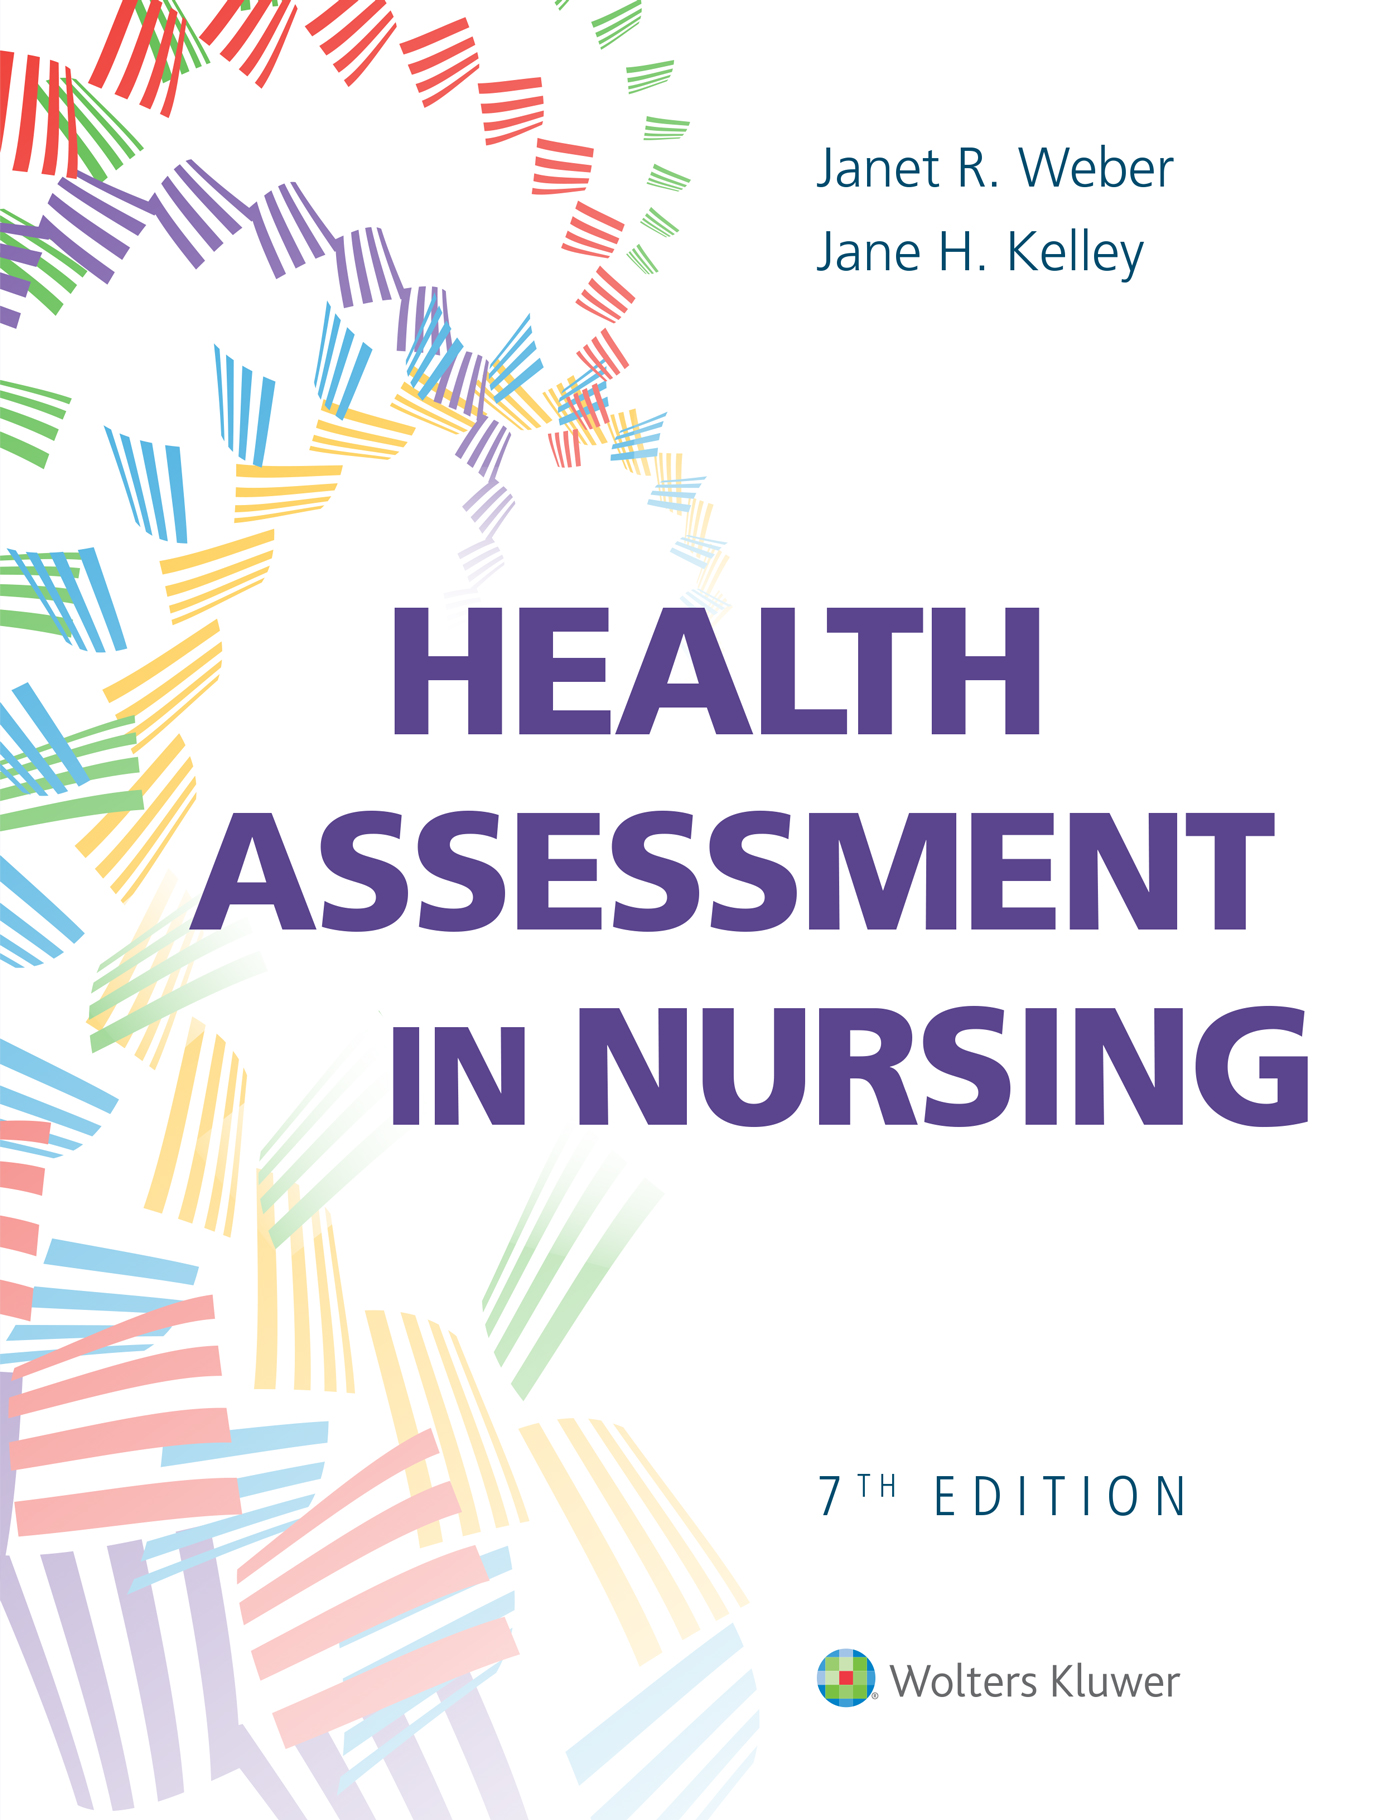 Cover image: Health Assessment Nursing, Weber